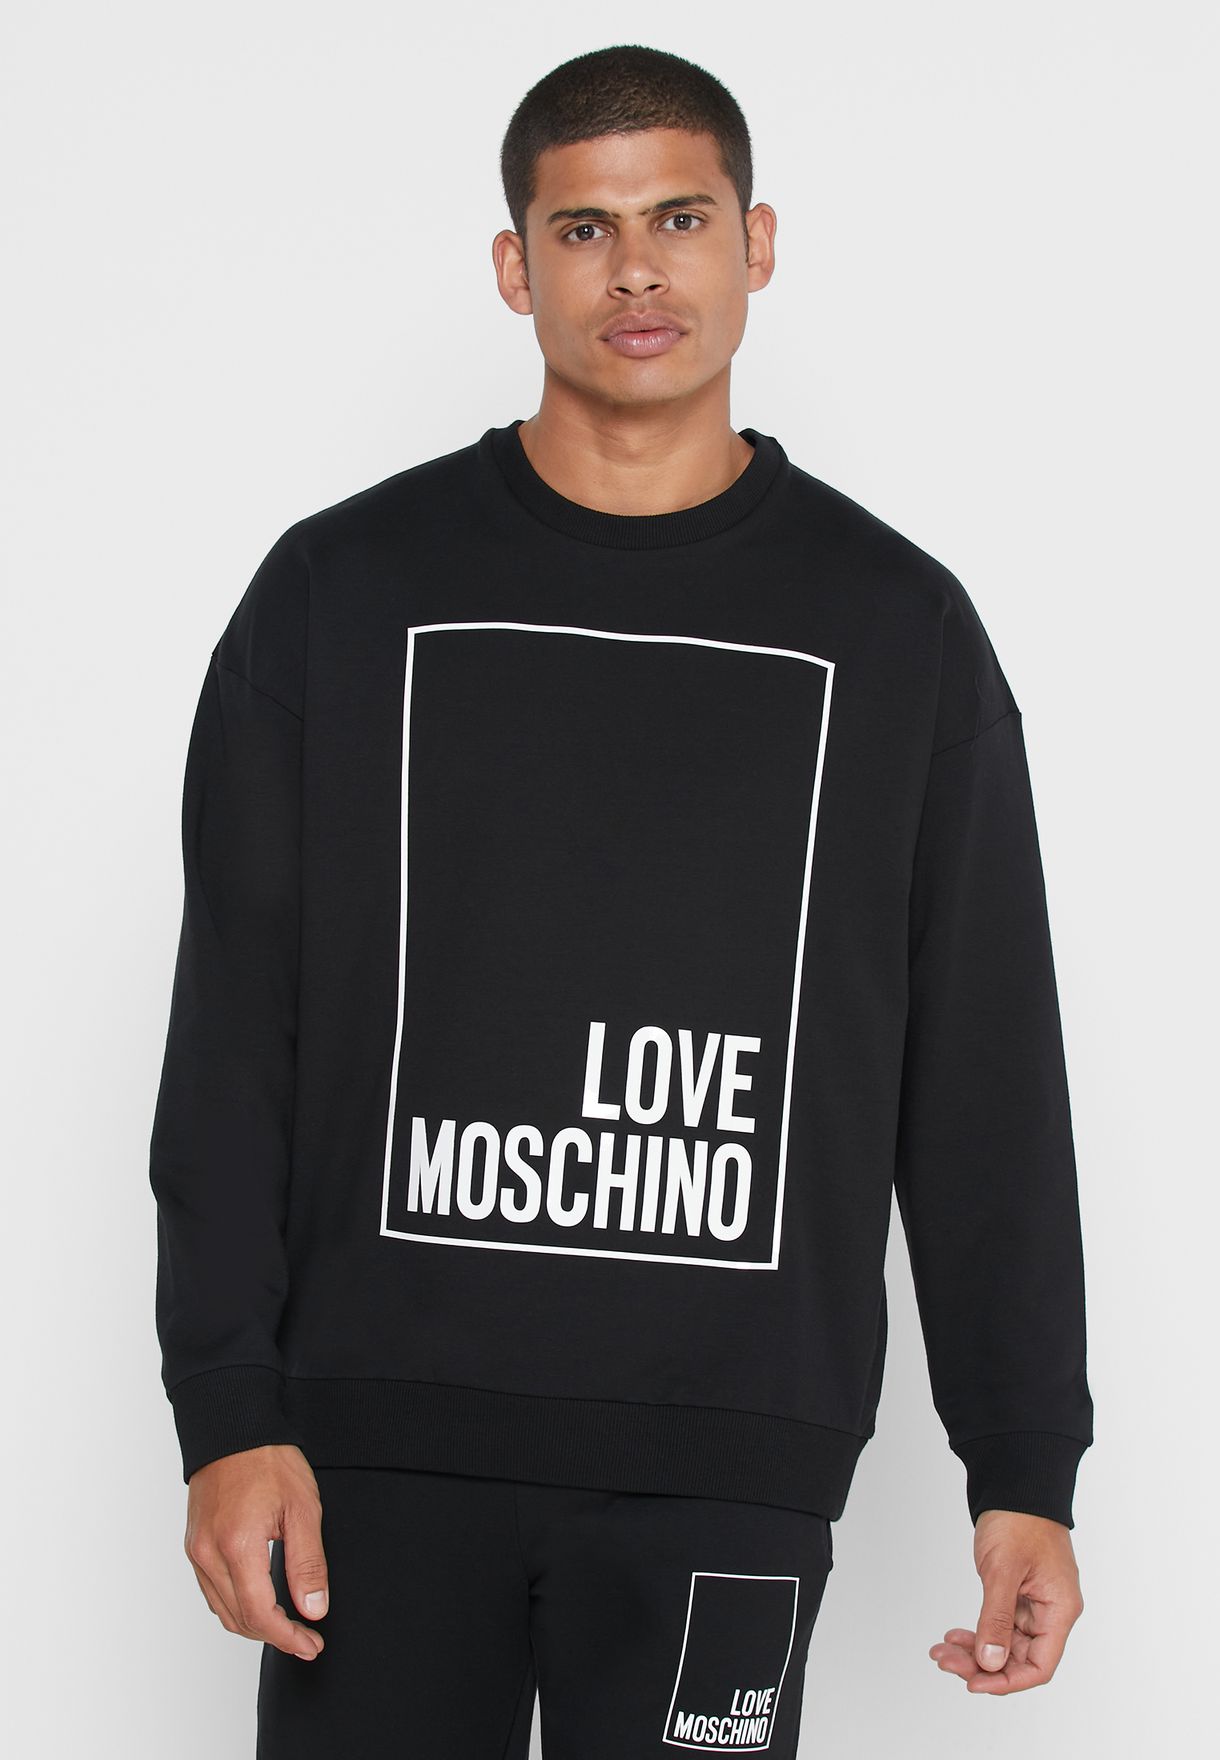 moschino hoodies mens